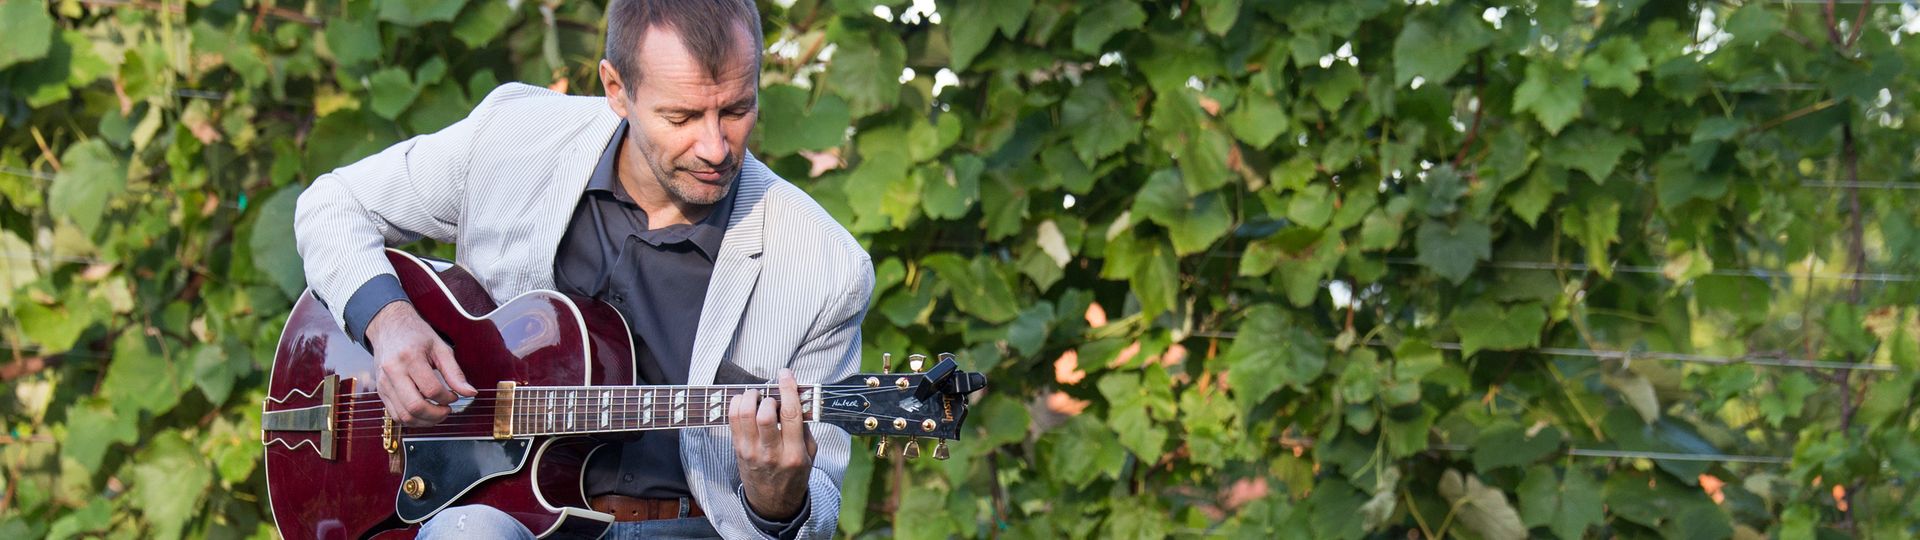 CHARLIE KAGER Livemusik Solokünstler Gitarrist Trauung Agape Dinner Hochzeit Gartenparty Geburtstagsfeier Vernissage Firmenfeier